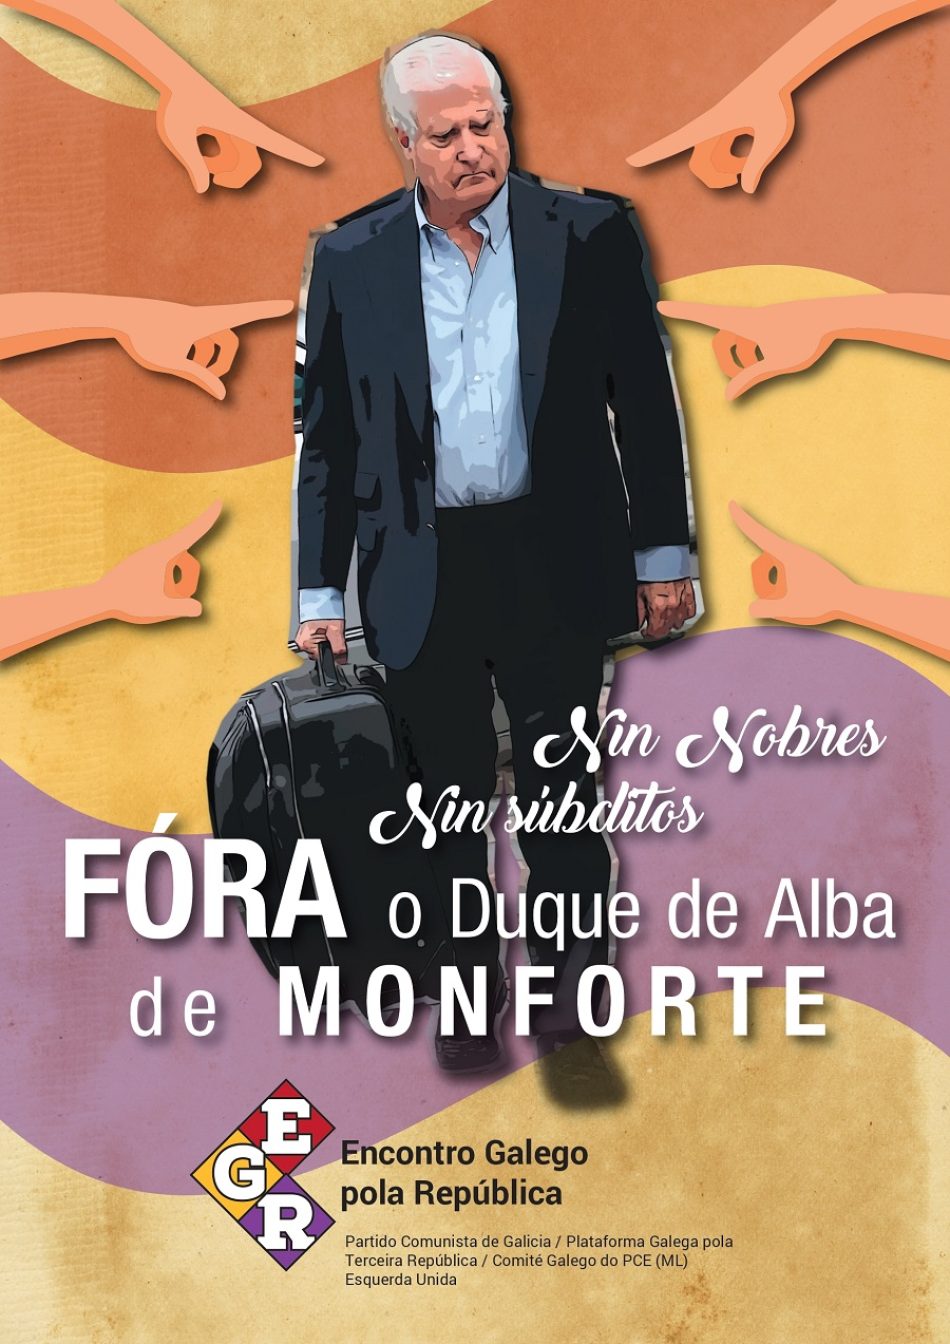 O Encontro Galego pola República expresa o seu rexeitamento a que o Duque de Alba sexa recibido con honras polo concello de Monforte